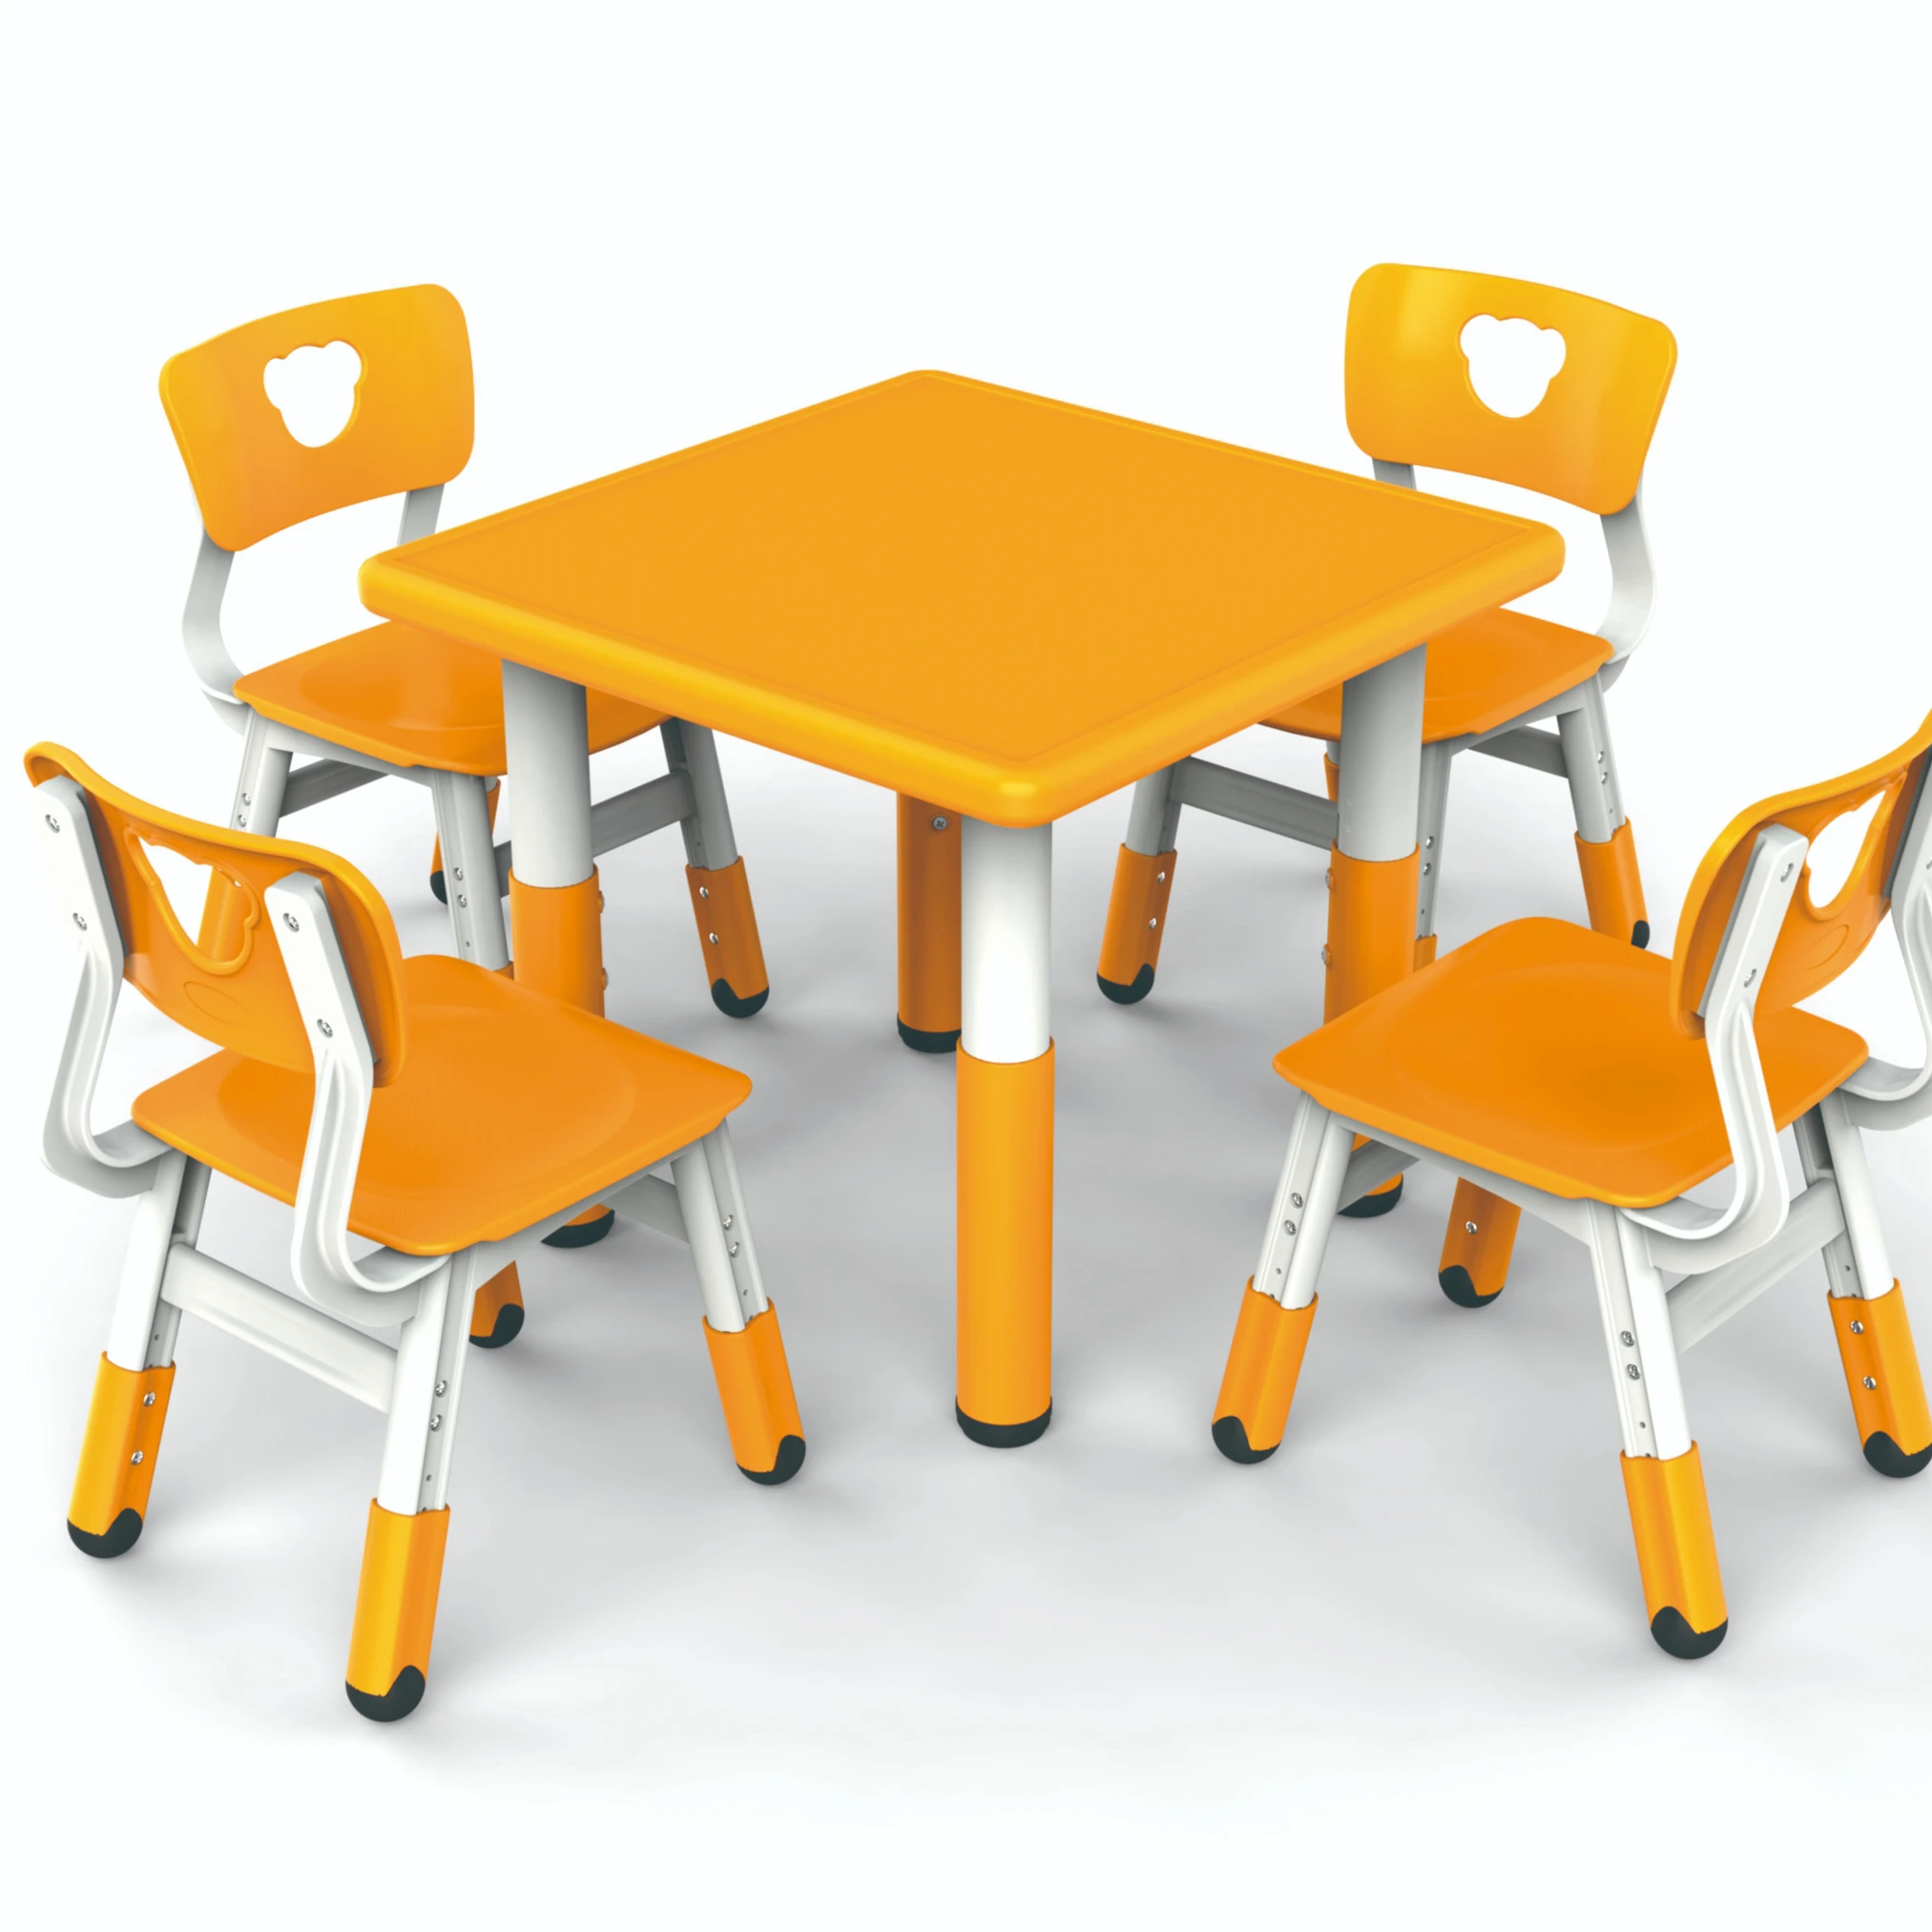 Оранжевый столик. Детский стол оранжевый. Стол оранжевый кухонный. Стол с оранжевыми стульями. Стол оранжевый круглый.